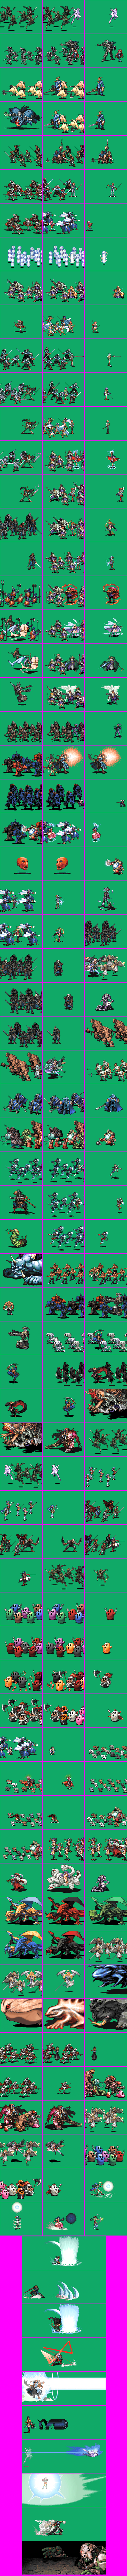 Kichikuo Rance - Battle Units (2/2)